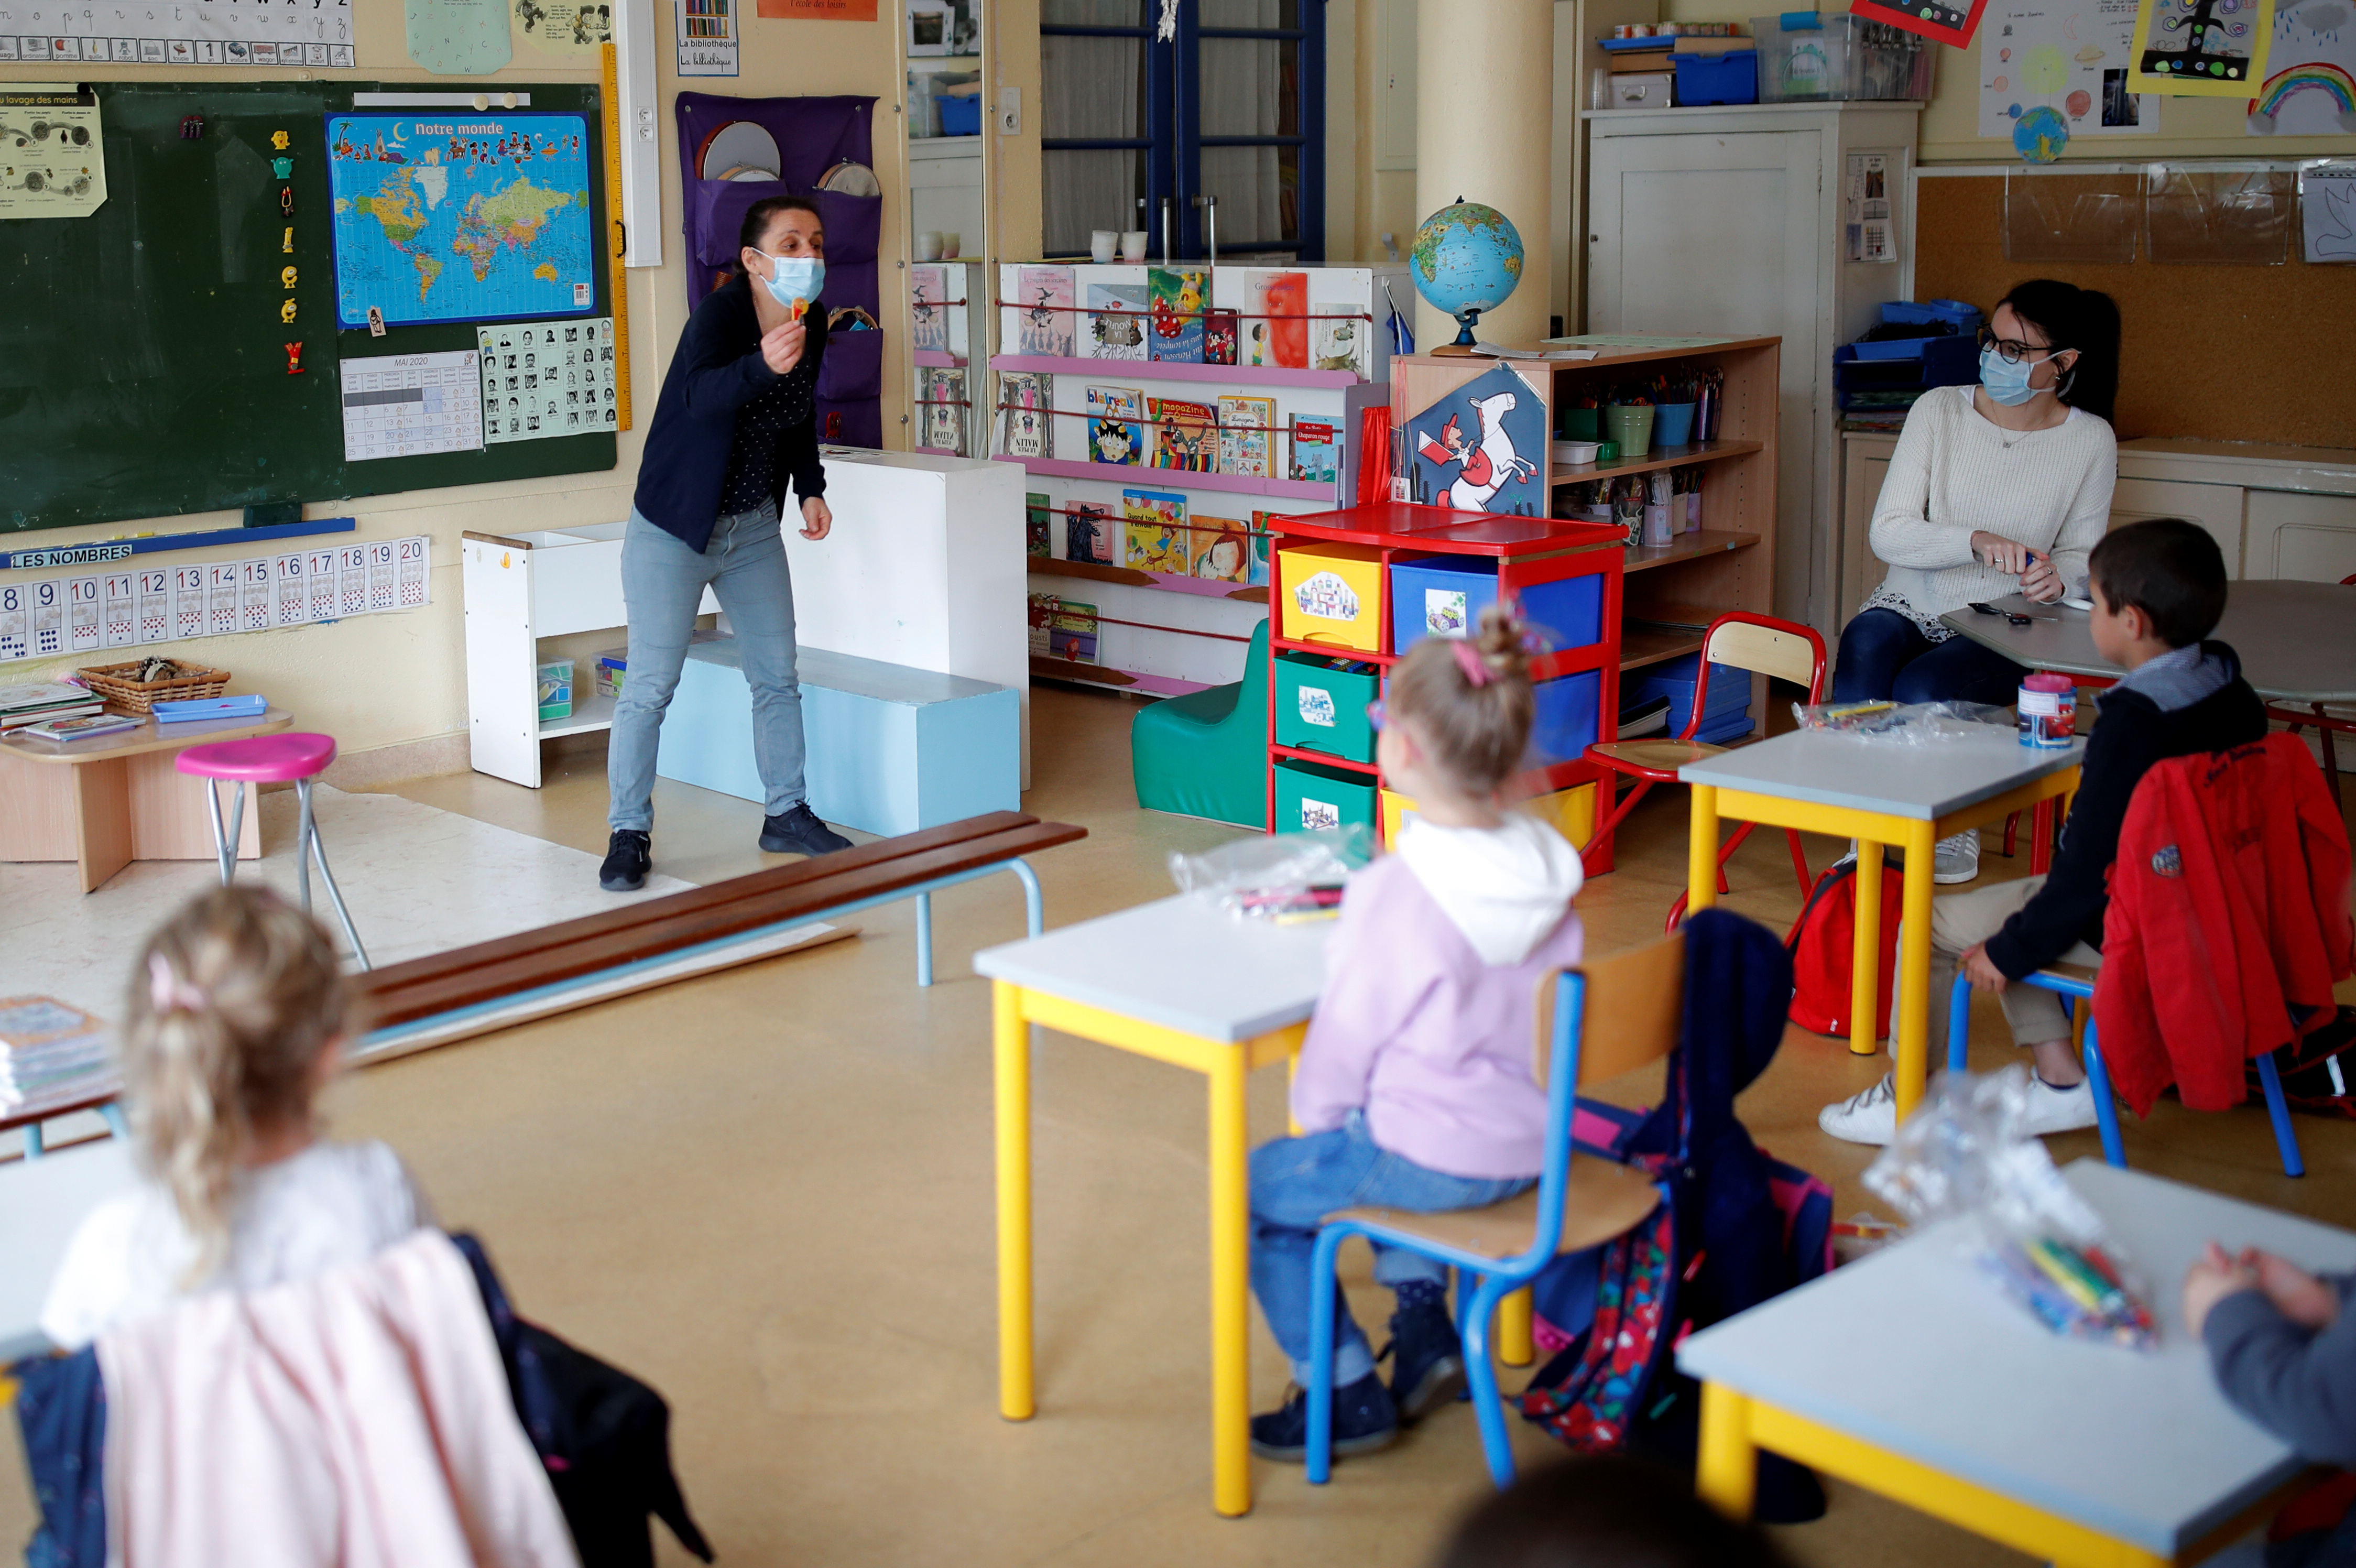 El debate sobre la reapertura de instituciones educativas se da en todo el mundo luego del cierre masivo por la pandemia de coronavirus. En la foto una escuela en Nantes, Francia (Reuters)